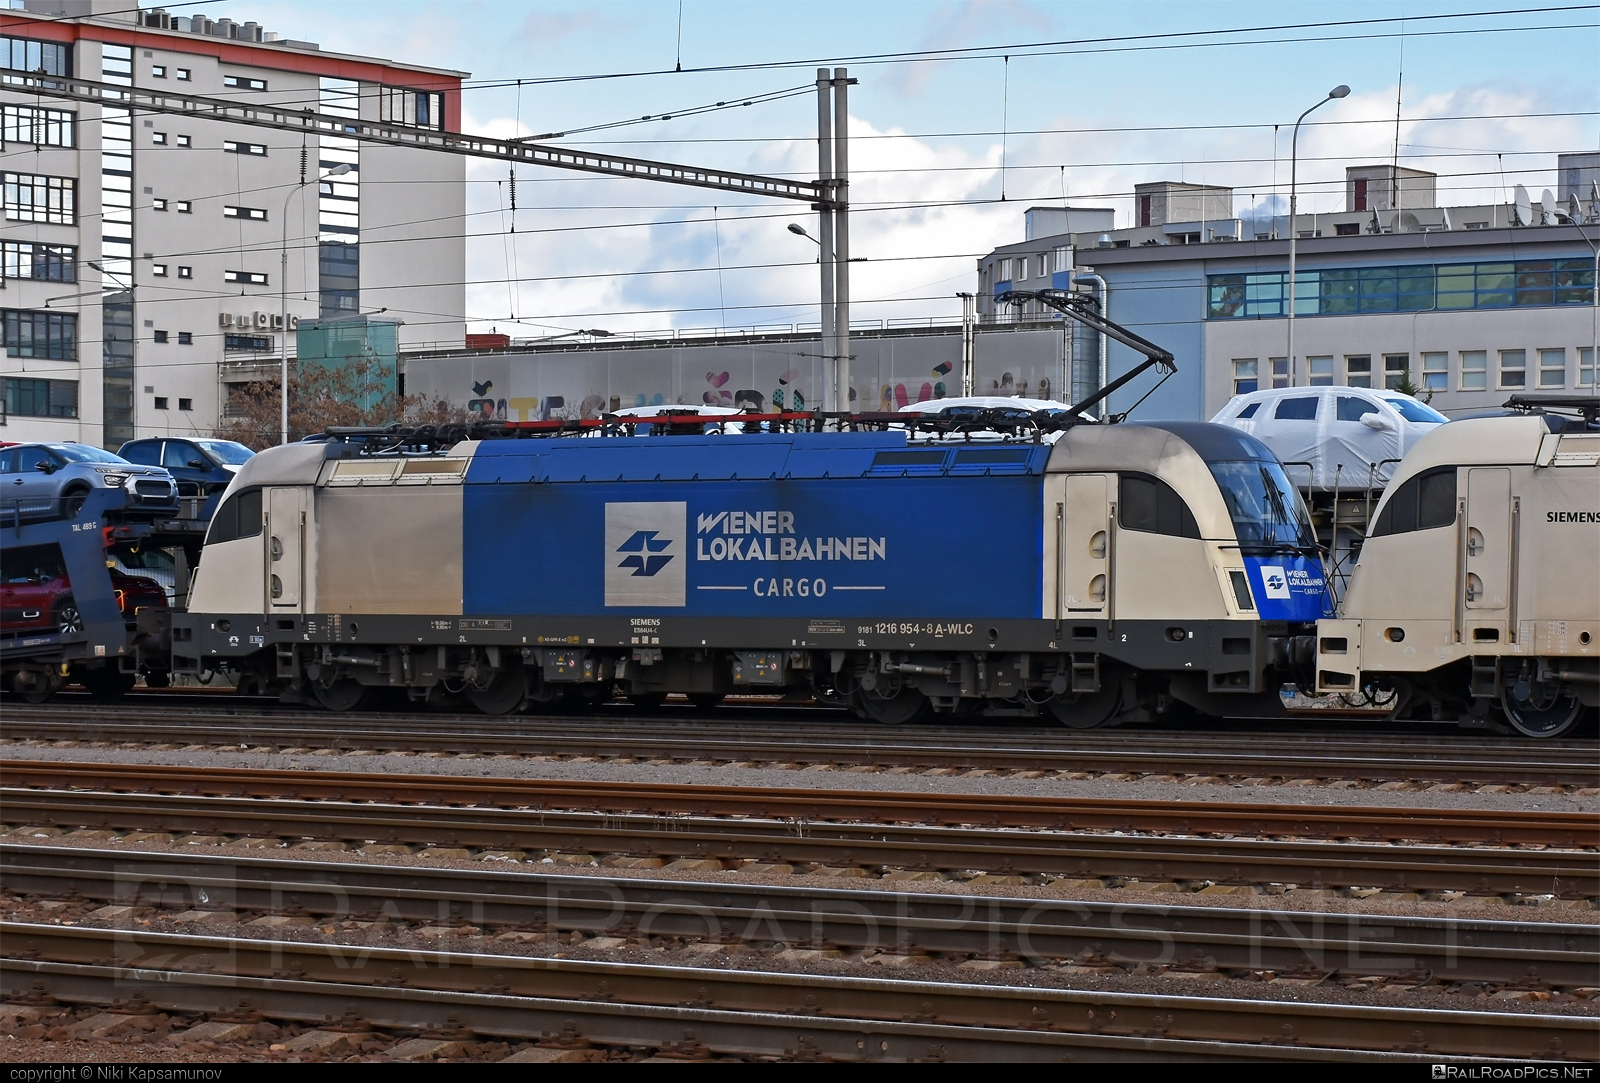 Siemens ES 64 U4 - 1216 954 operated by Wiener Lokalbahnen Cargo GmbH #es64 #es64u4 #eurosprinter #siemens #siemenses64 #siemenses64u4 #siemenstaurus #taurus #tauruslocomotive #wienerlokalbahnencargo #wienerlokalbahnencargogmbh #wlc